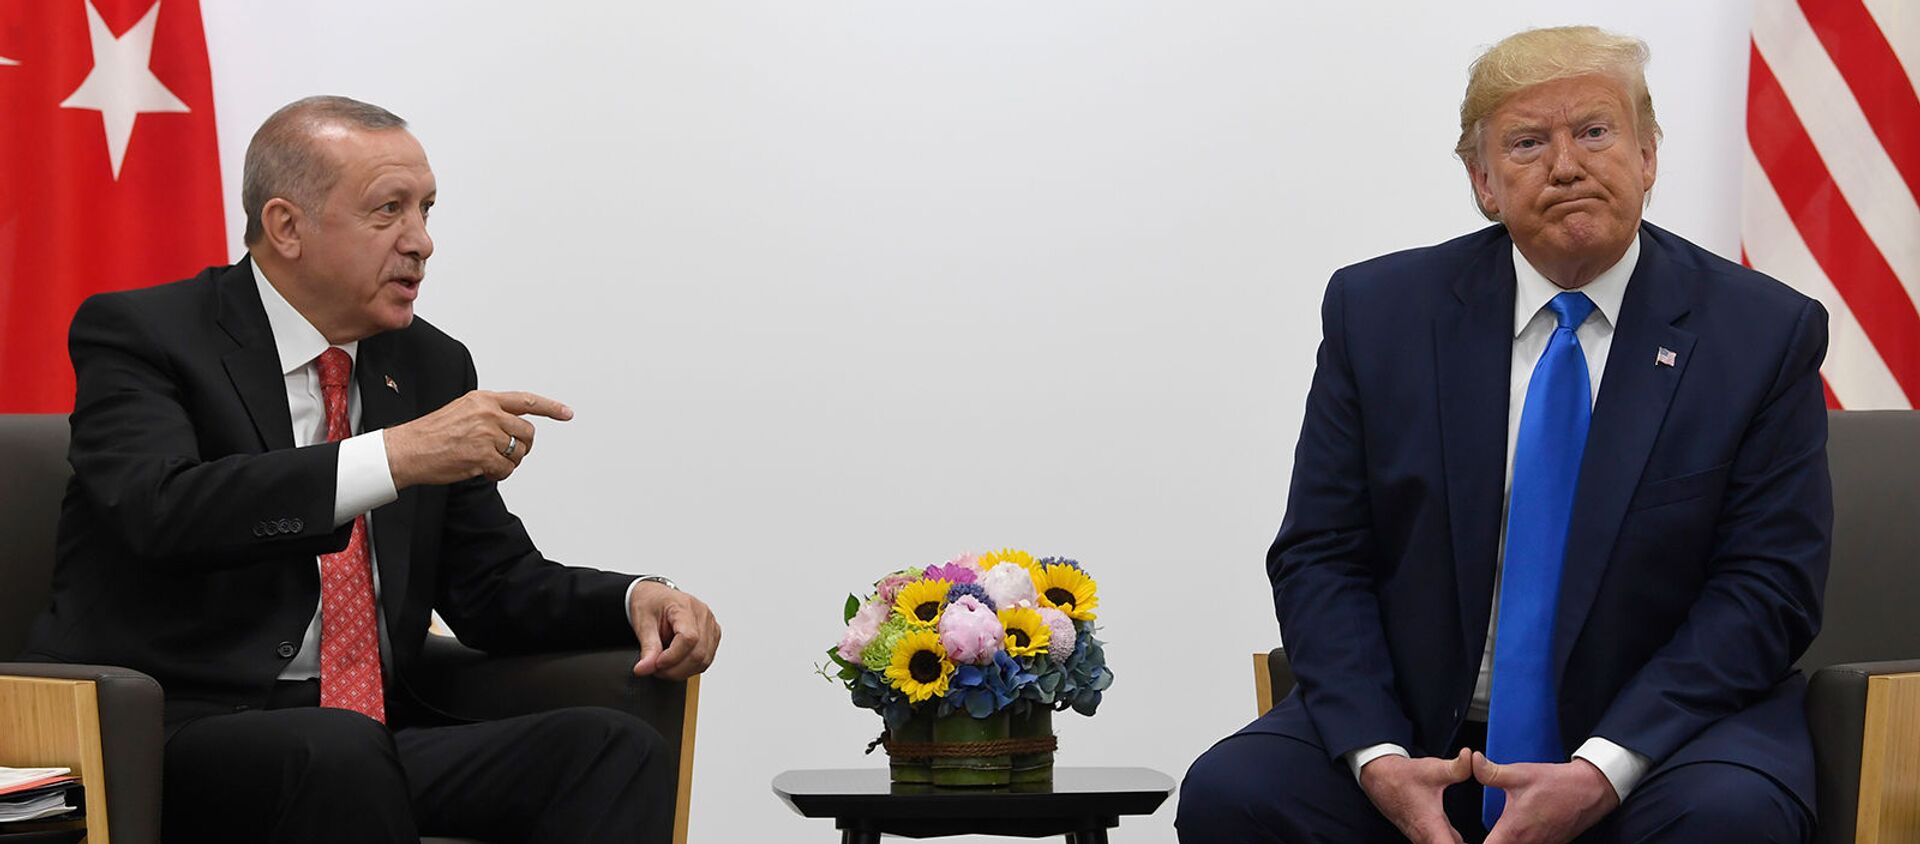 Встреча президентов Турции и США Реджепа Тайипа Эрдогана и Дональда Трампа на полях саммита G20 (29 июня 2019). Осака - Sputnik Армения, 1920, 19.10.2019